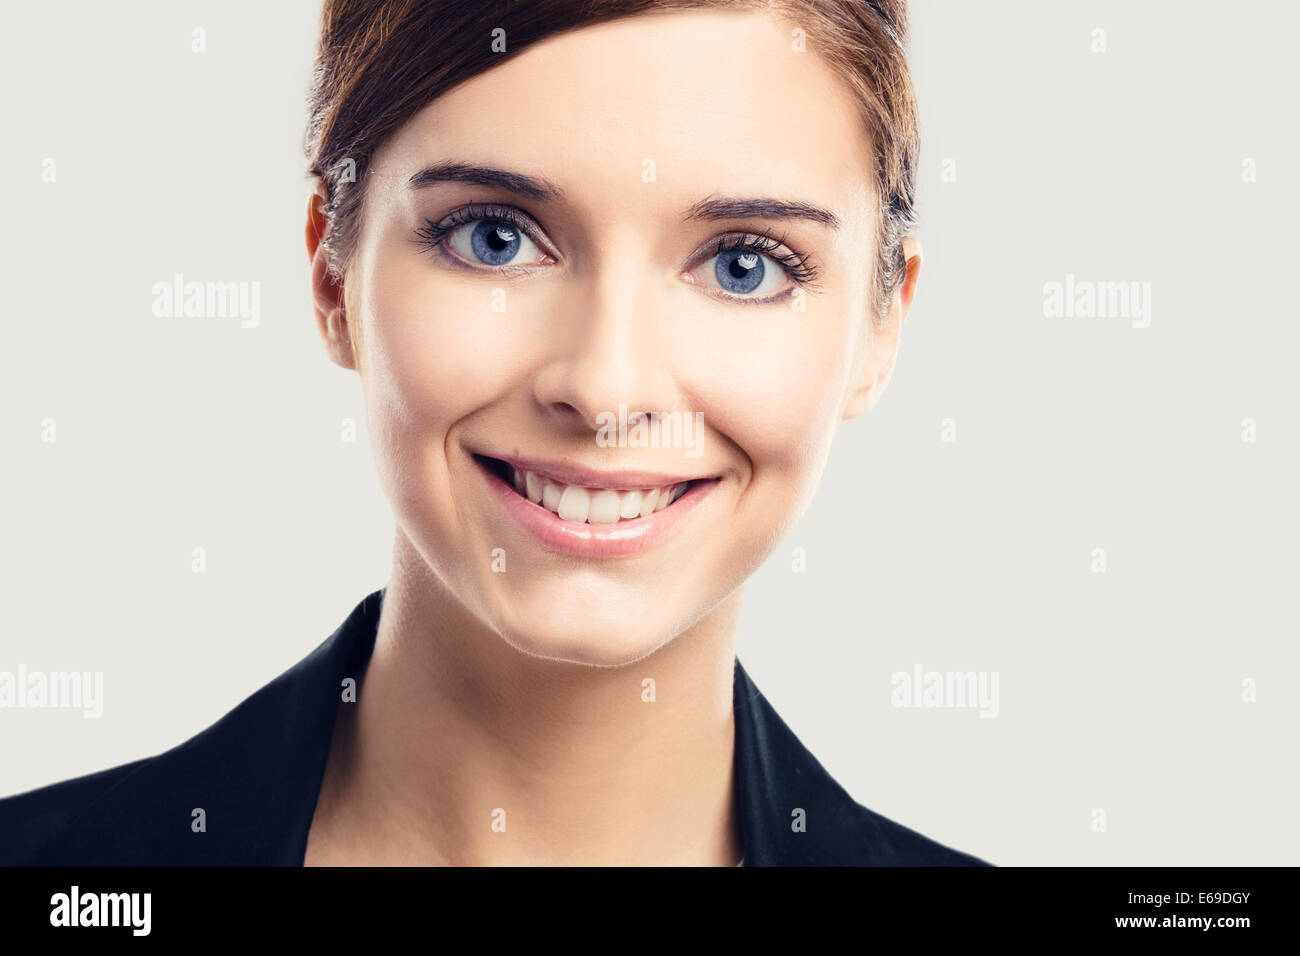 Ritratto di una bella donna bionda con gli occhi blu sorridente Foto Stock